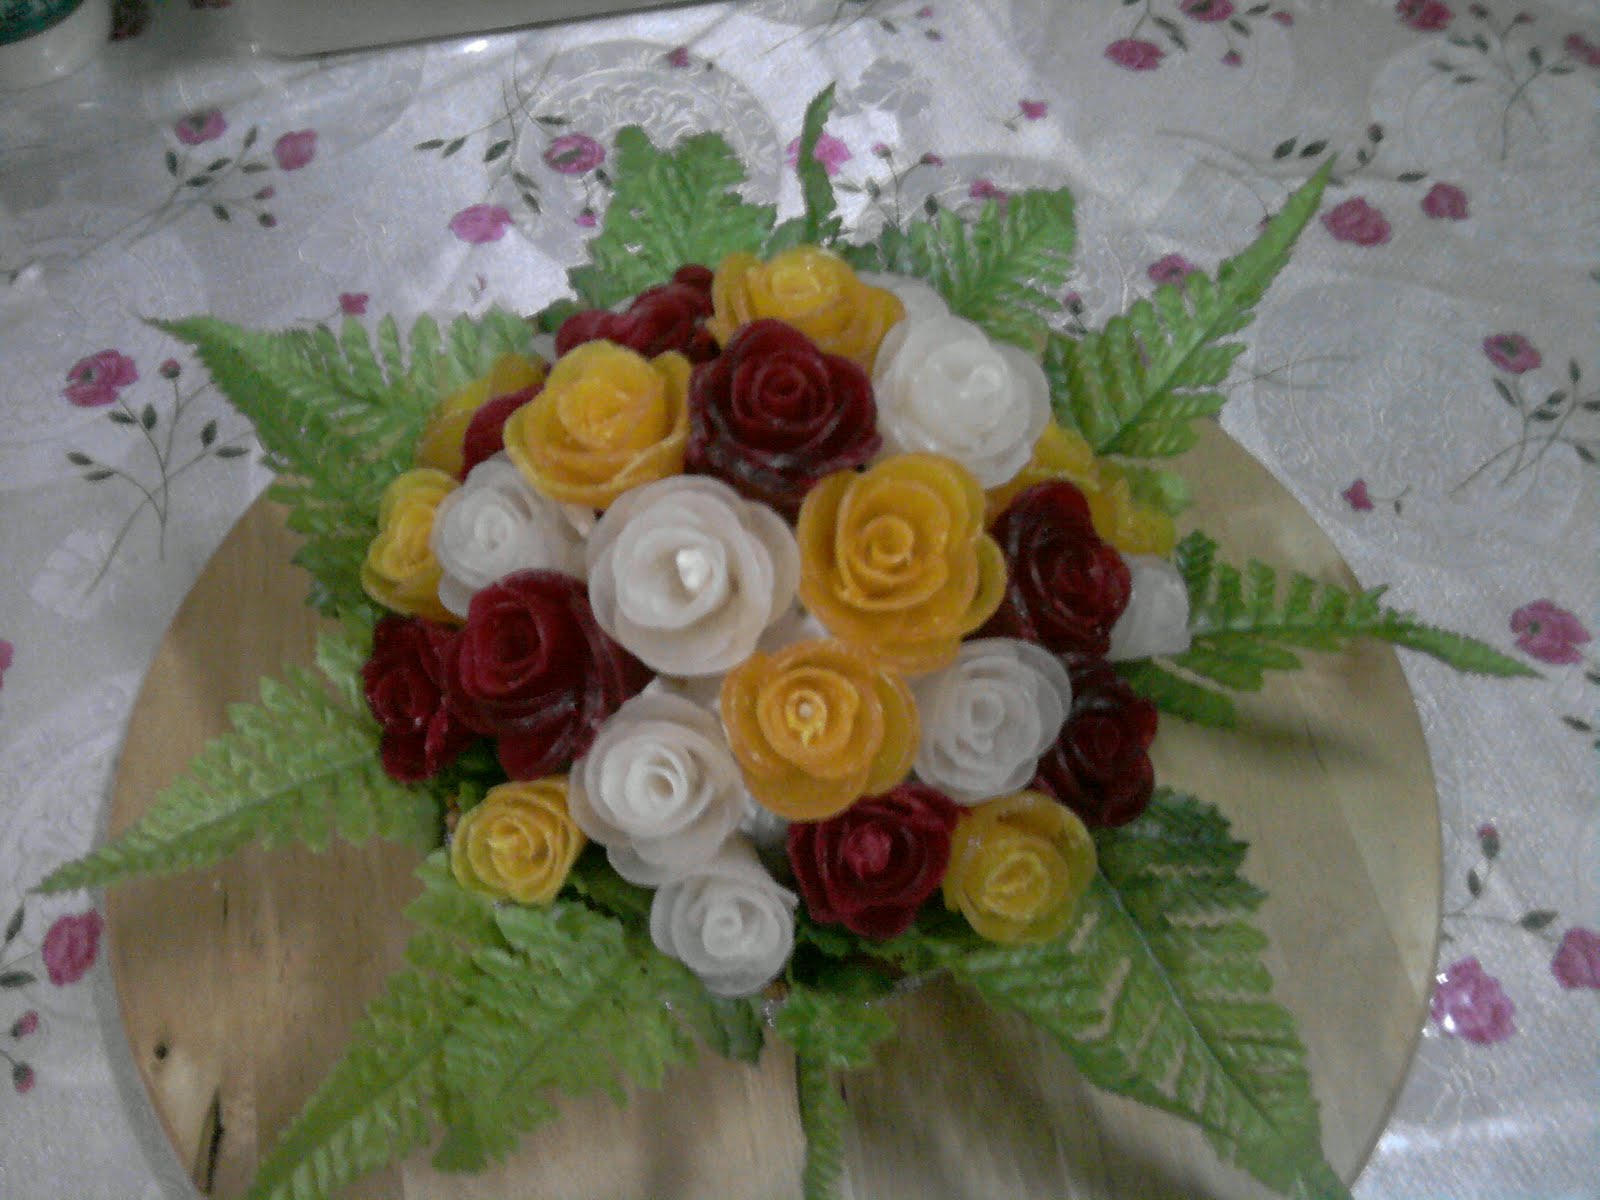 Cenderahati / Hantaran Bunga Agar-agar Kering at 5 Petal Roses